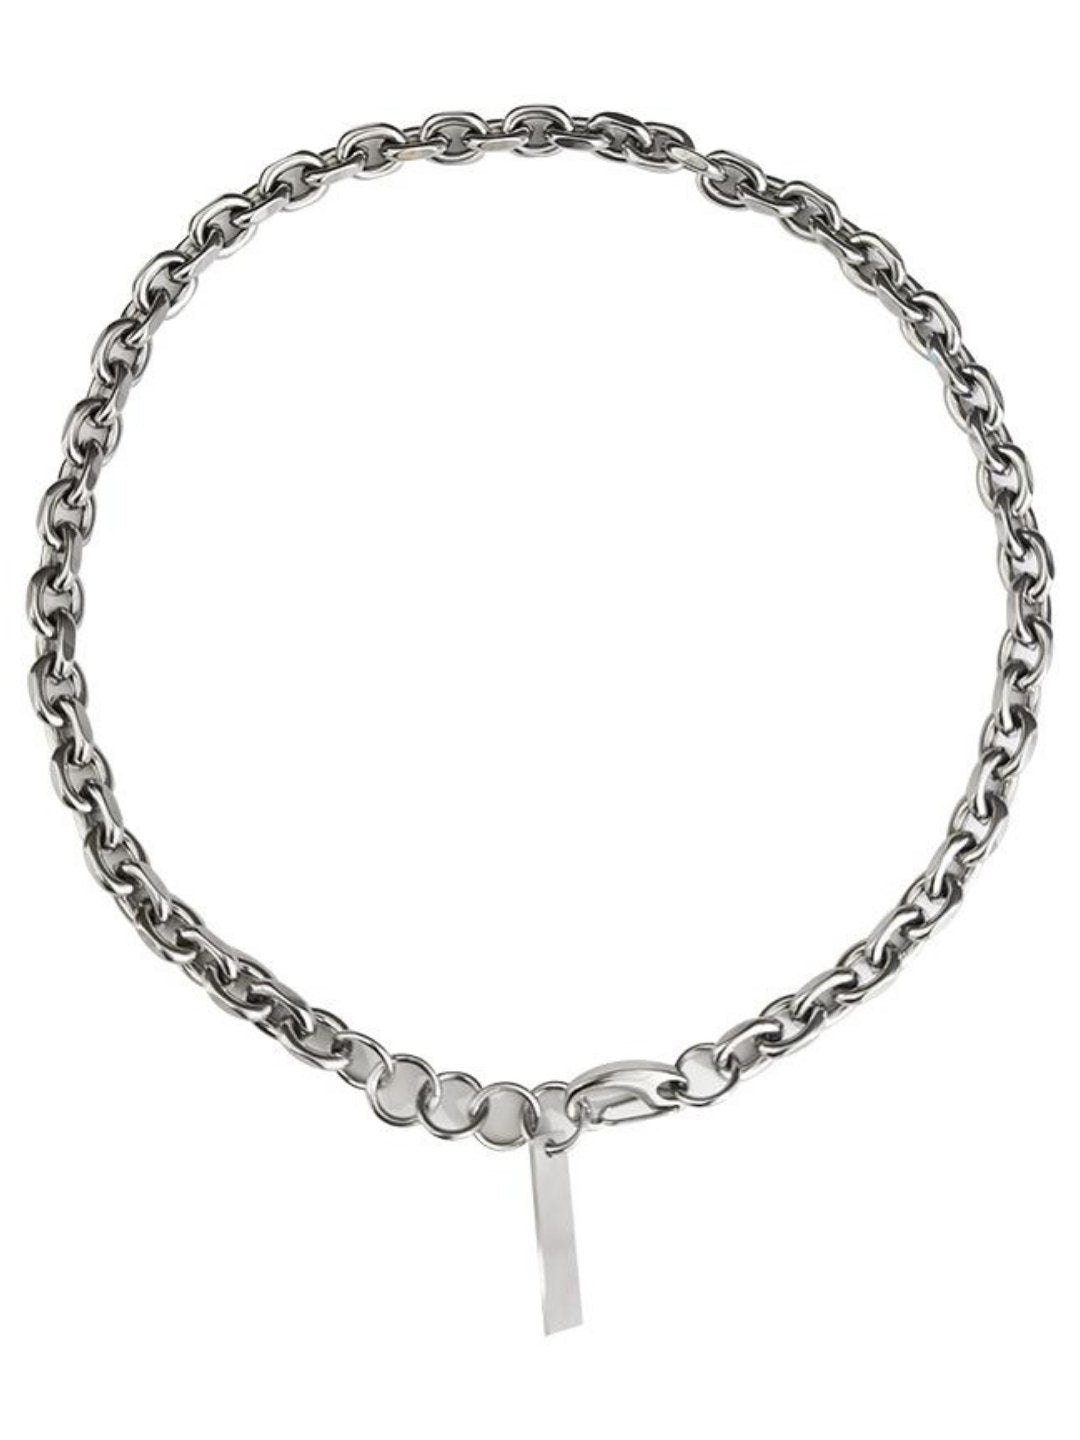 Silver necklace ax47 - AXES